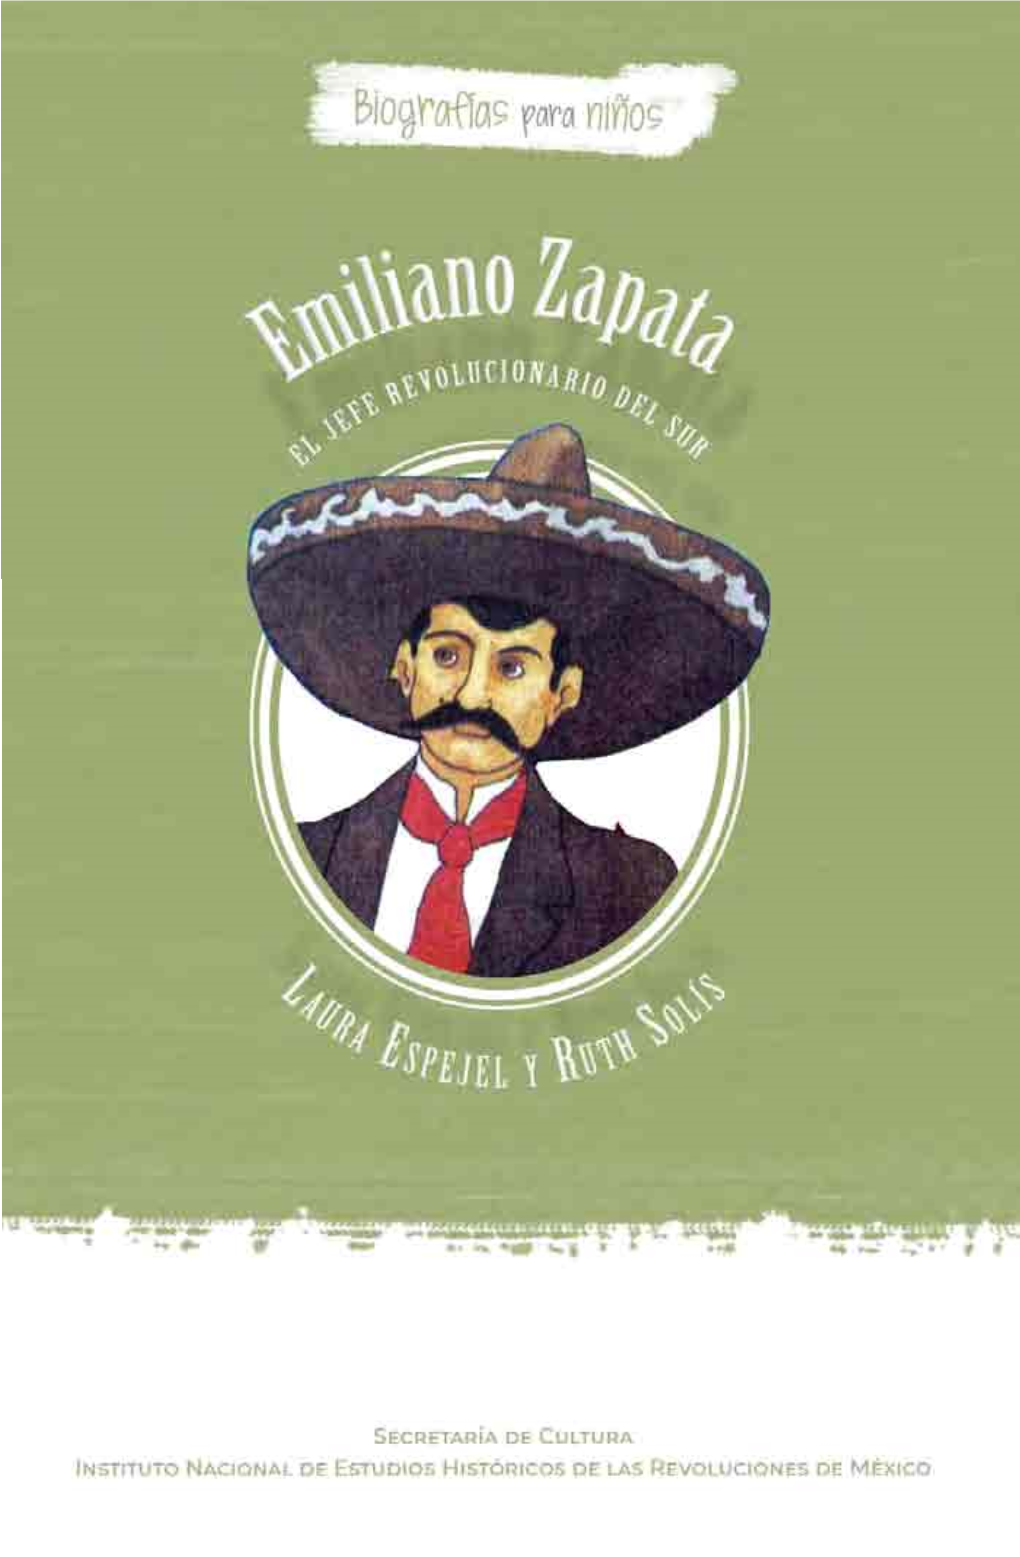 Emiliano Zapata • 7 Gico Creció La Producción De Azúcar Y Se Hizo Más Fácil Transportarla